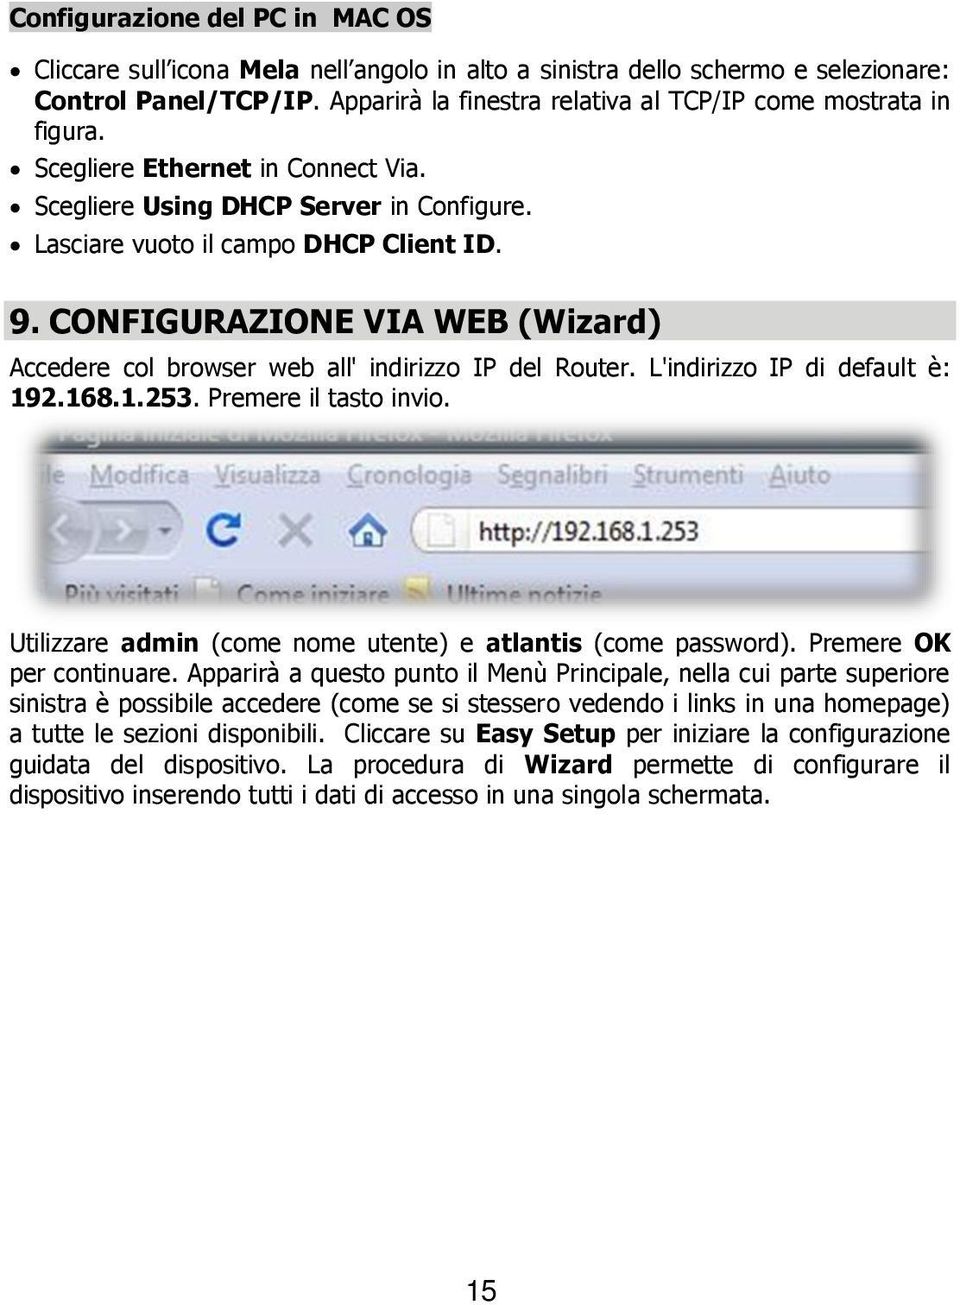 CONFIGURAZIONE VIA WEB (Wizard) Accedere col browser web all' indirizzo IP del Router. L'indirizzo IP di default è: 192.168.1.253. Premere il tasto invio.